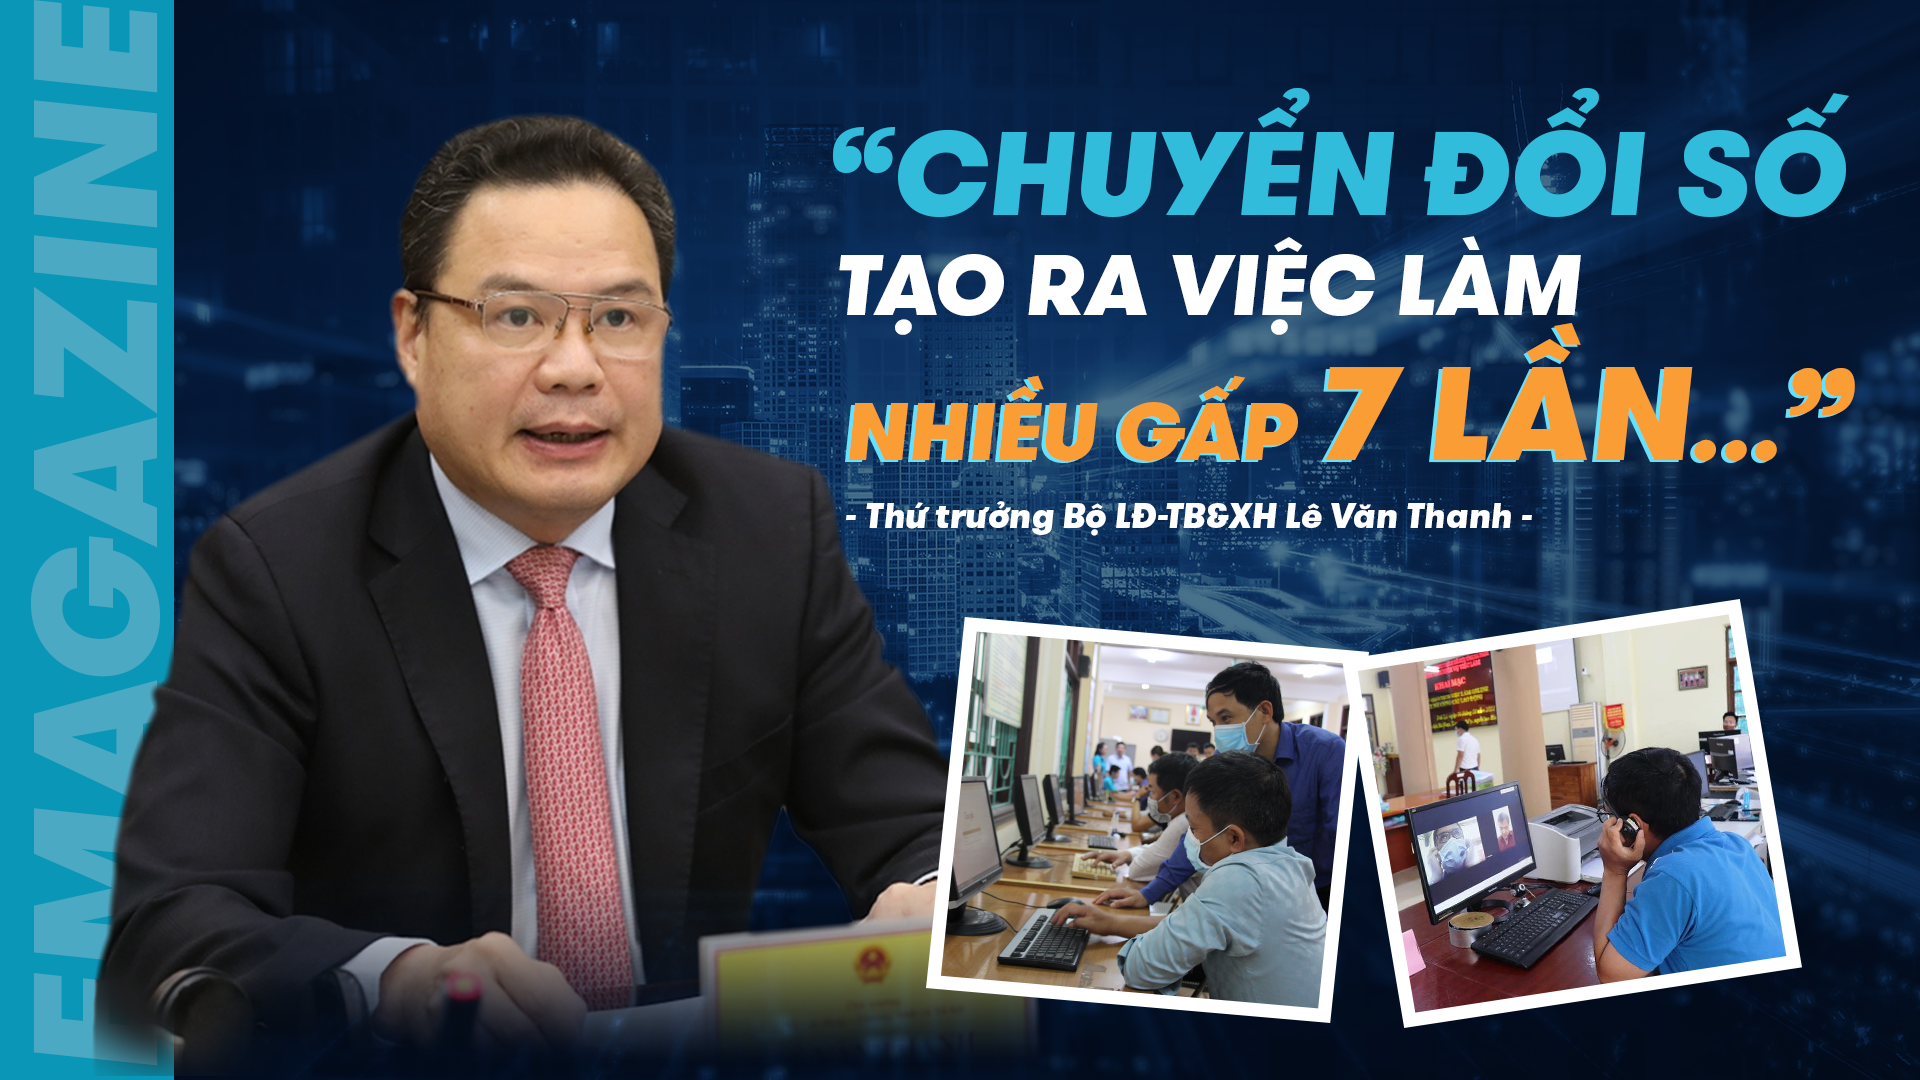 Thứ trưởng Lê Văn Thanh: "Chuyển đổi số tạo ra việc làm nhiều gấp 7 lần…"